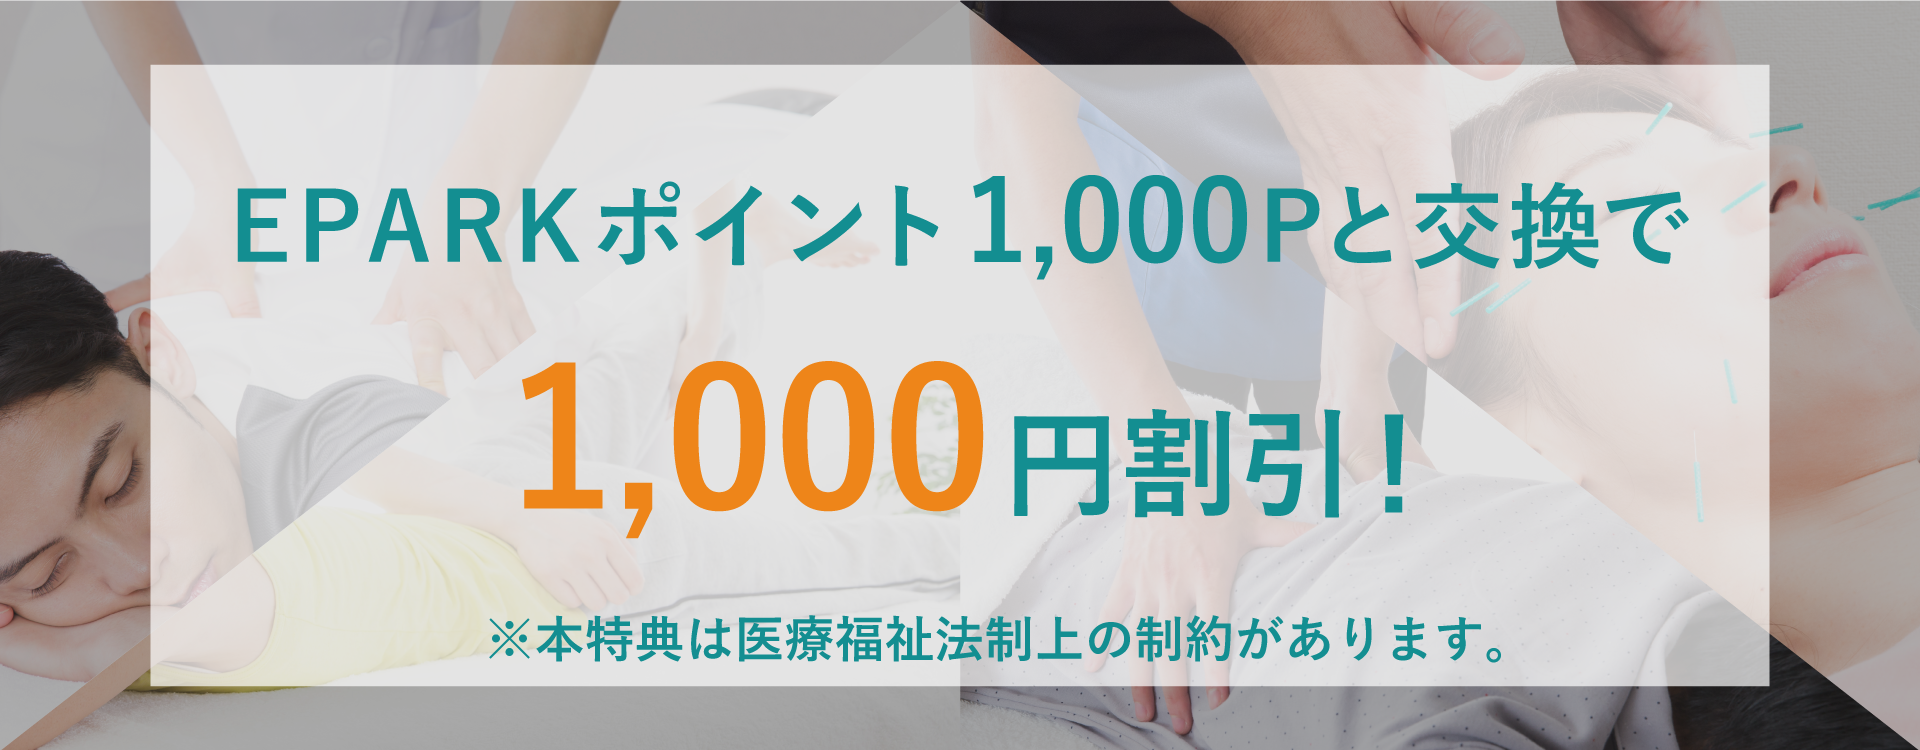 EPARKポイント1,000Pと交換で1,000円割引! ※本特典は医療福祉法制上の制約があります。